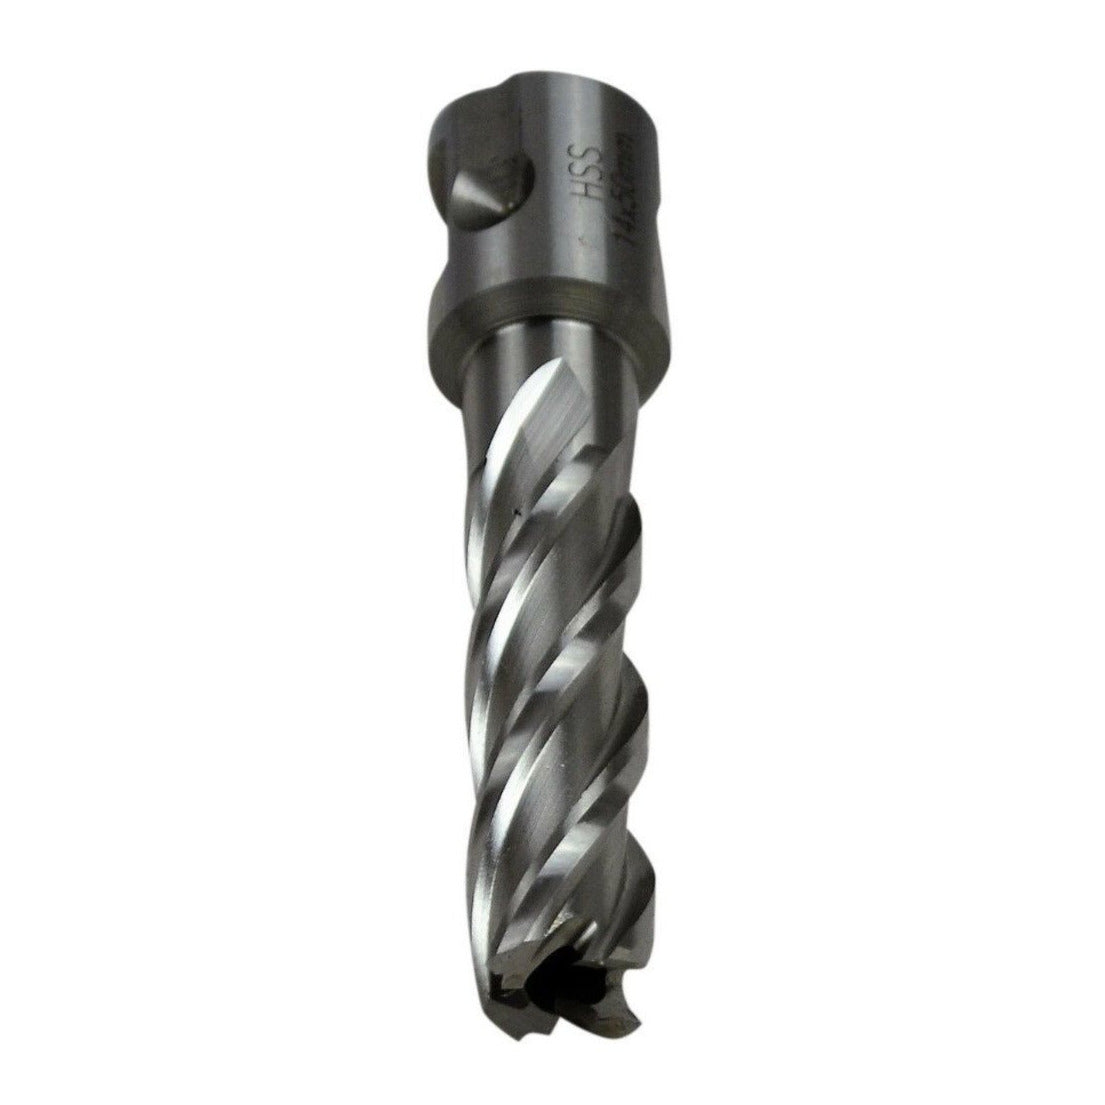 annular cutter 14x50mm HSS broach cutter universal shank rotabroach magnetic drill metalwork CNC supplies